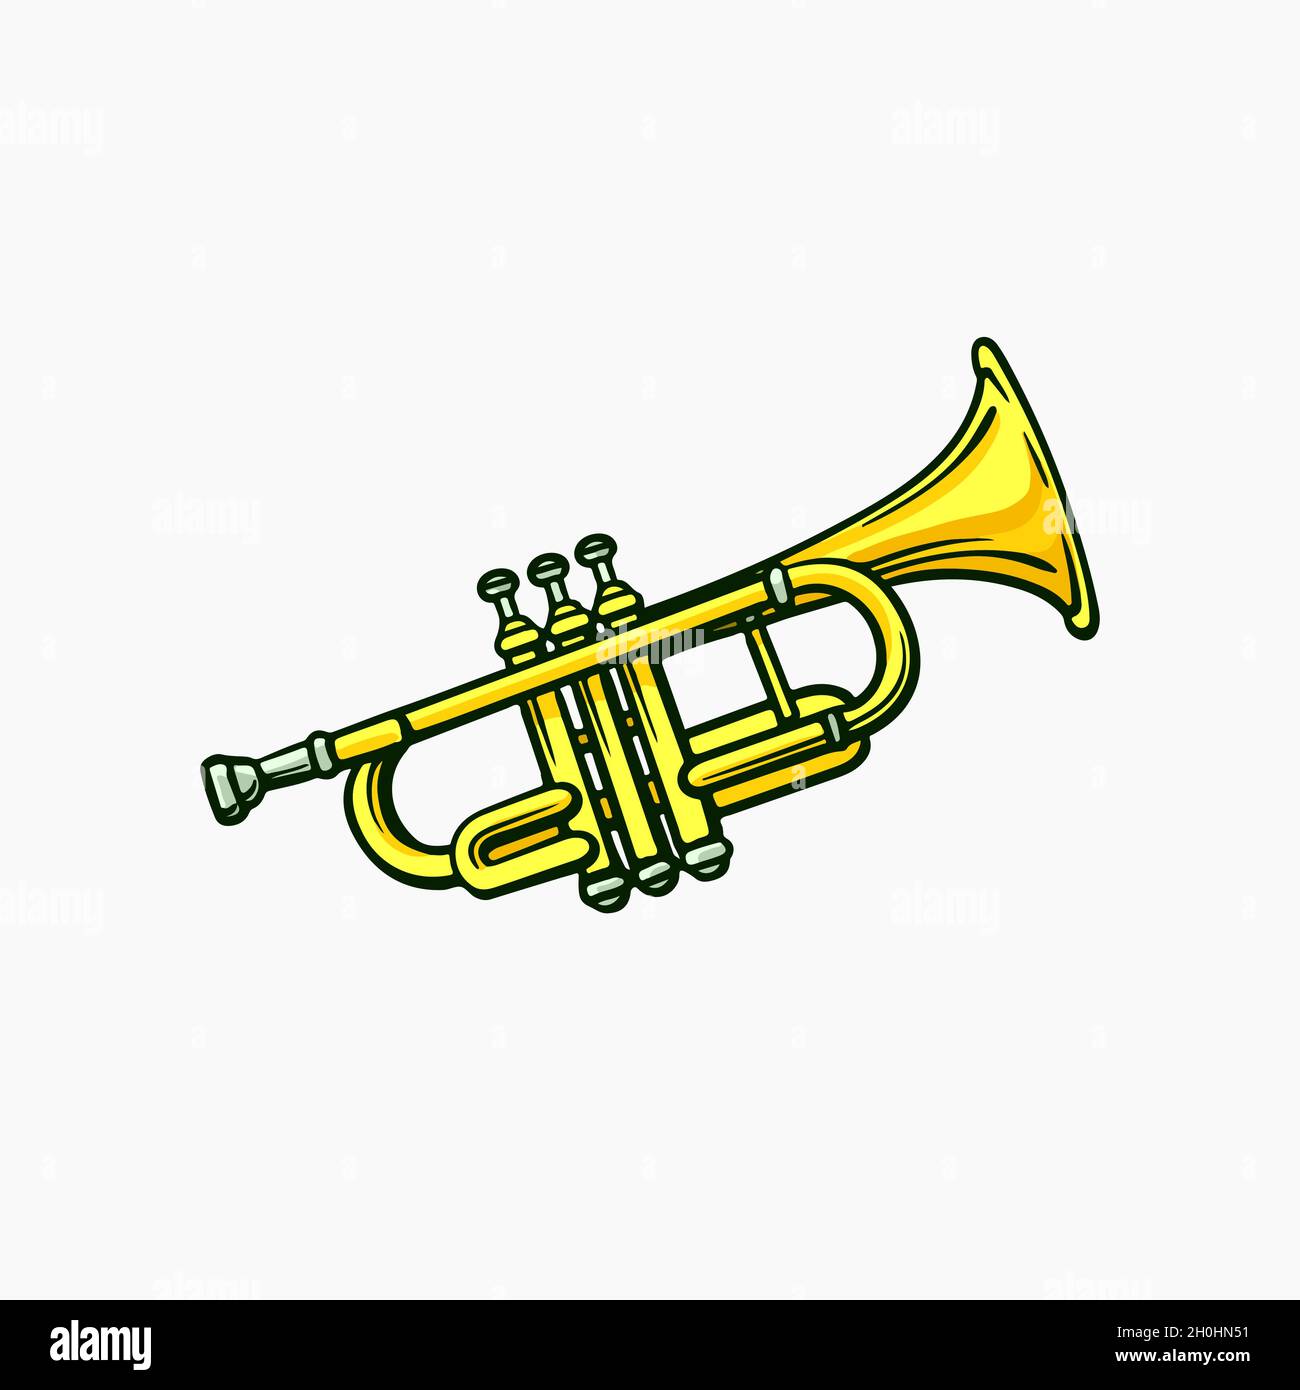 Cartoon trumpet instrument music wind Banque d'images détourées - Alamy